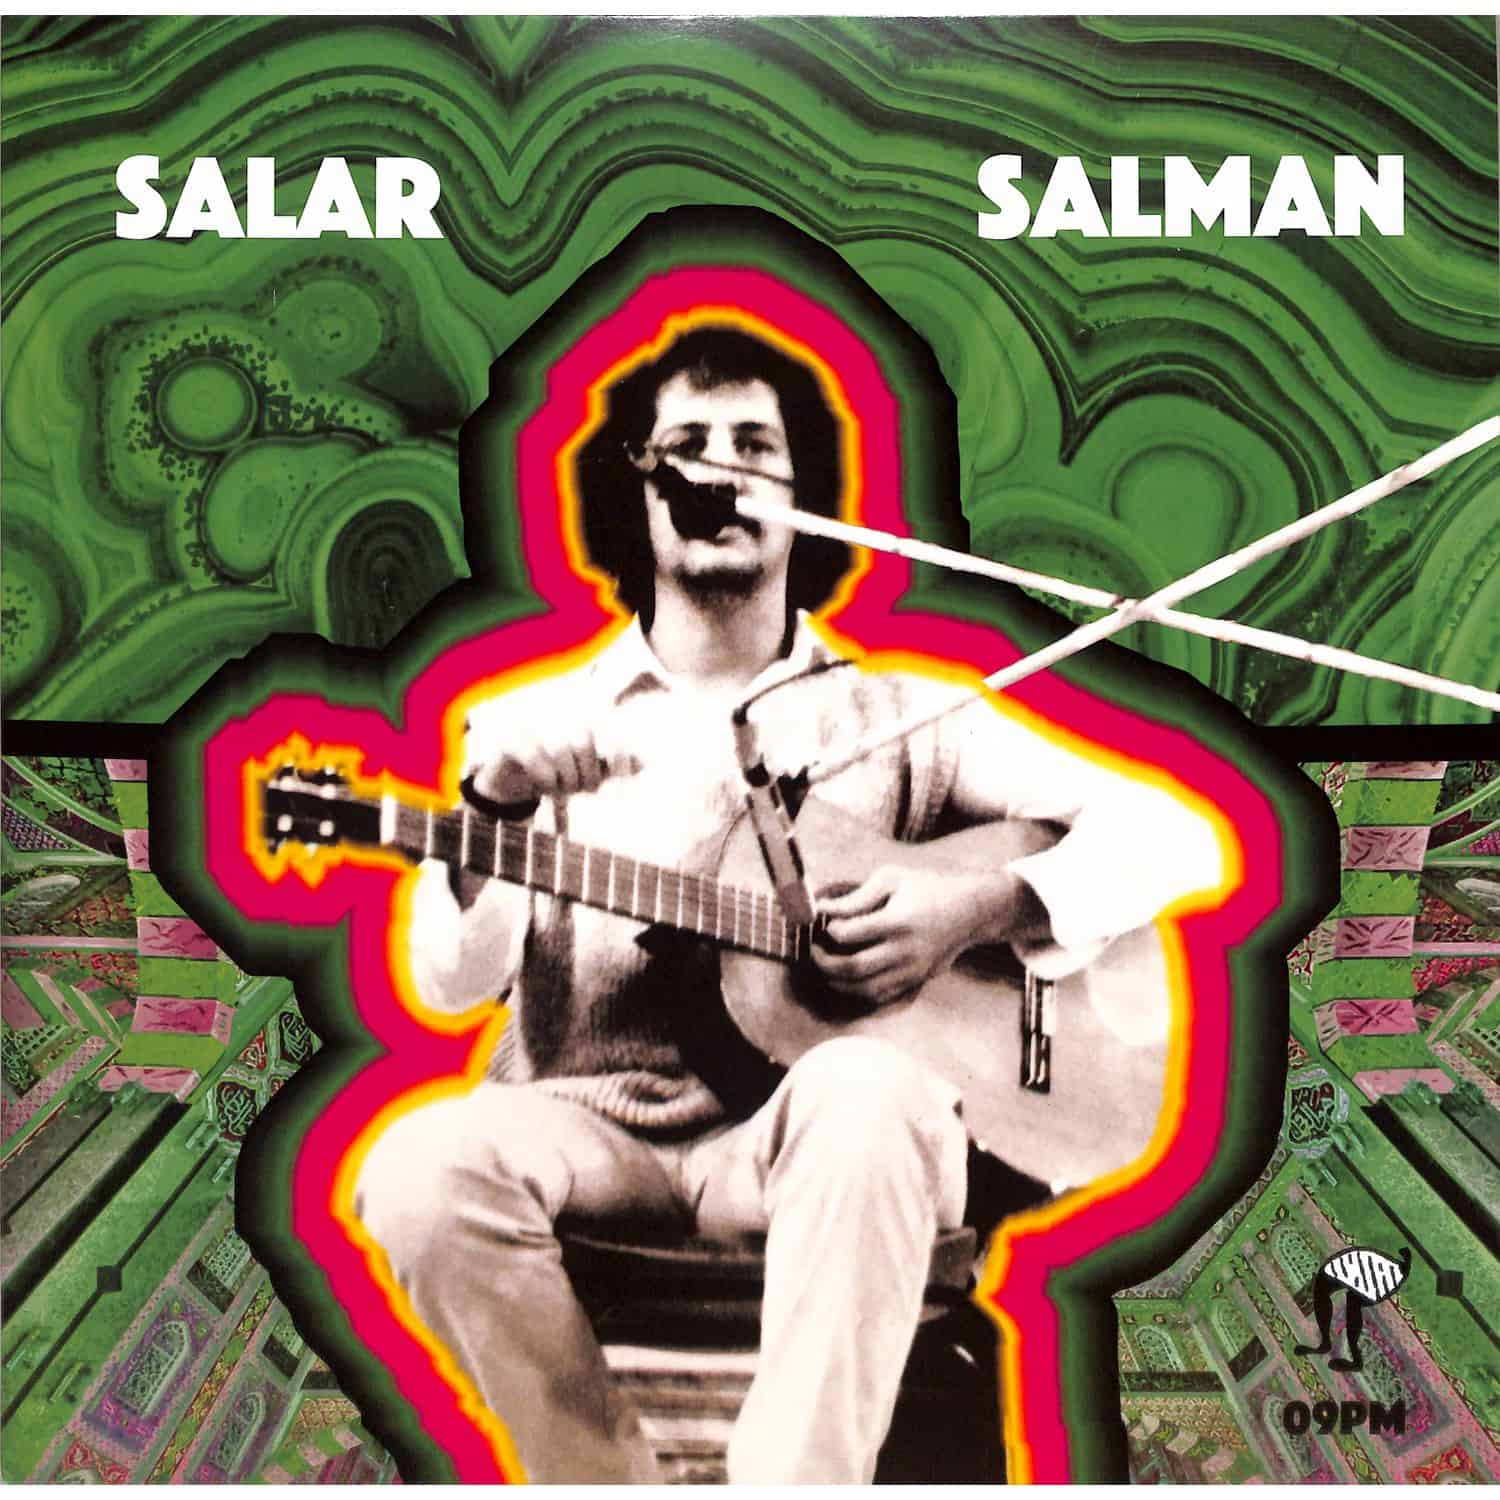 Salar Salman - 09PM 